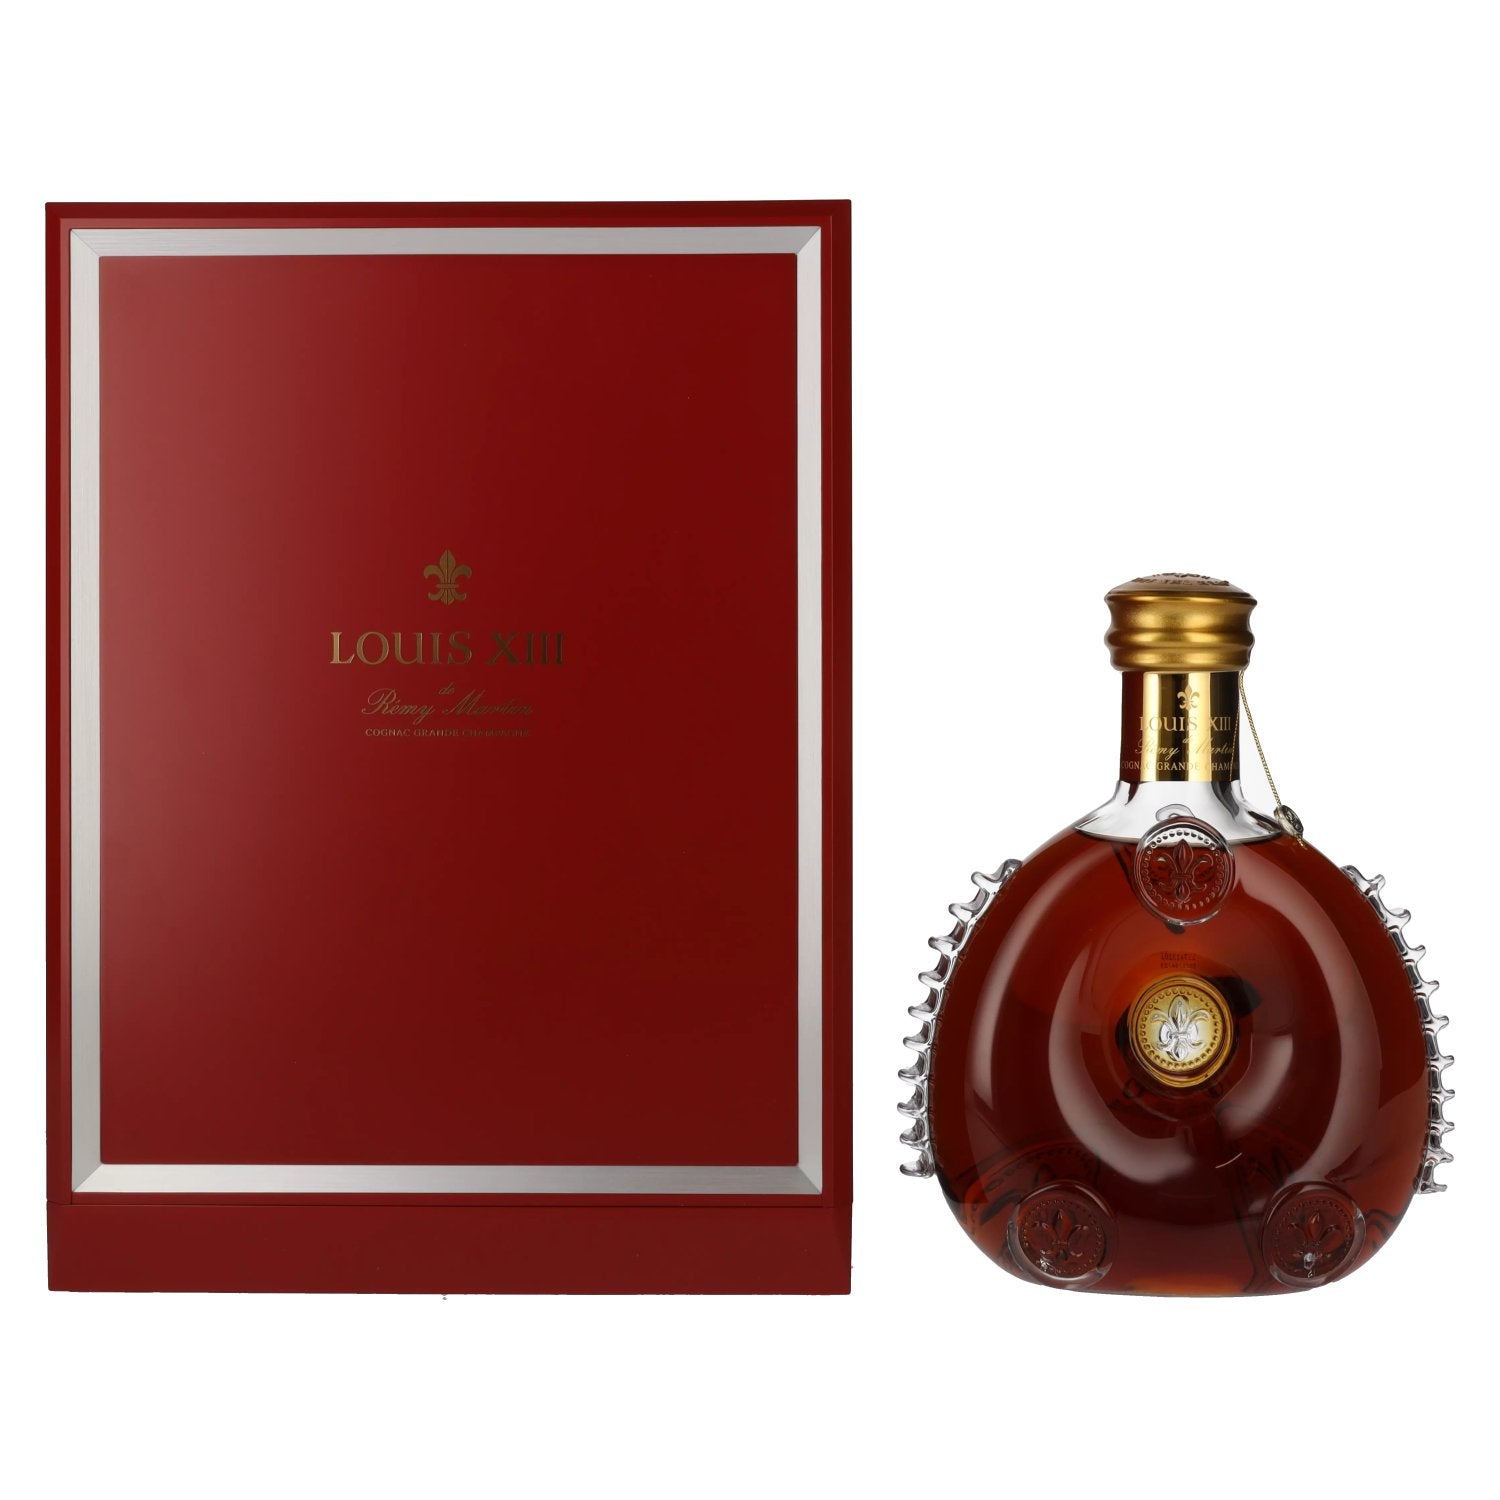 Remy Martin LOUIS XIII Cognac Fine Champagne 40% Vol. 0,7l in Giftbox